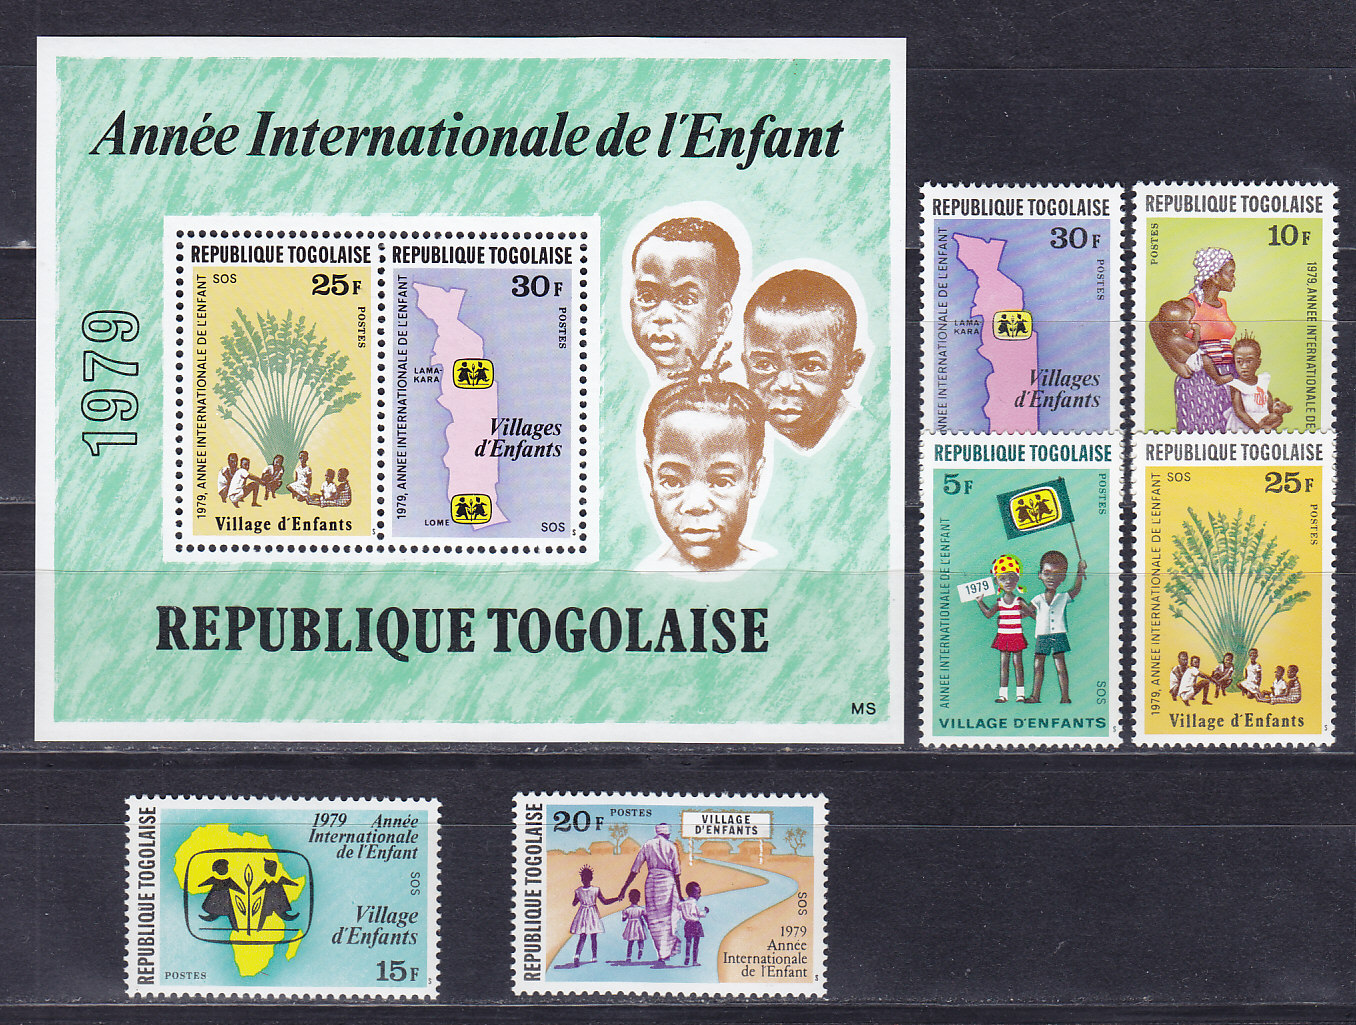 Того, 1979, Международный год ребенка. 6 марок и блок. № 1360-1365, № 143 А